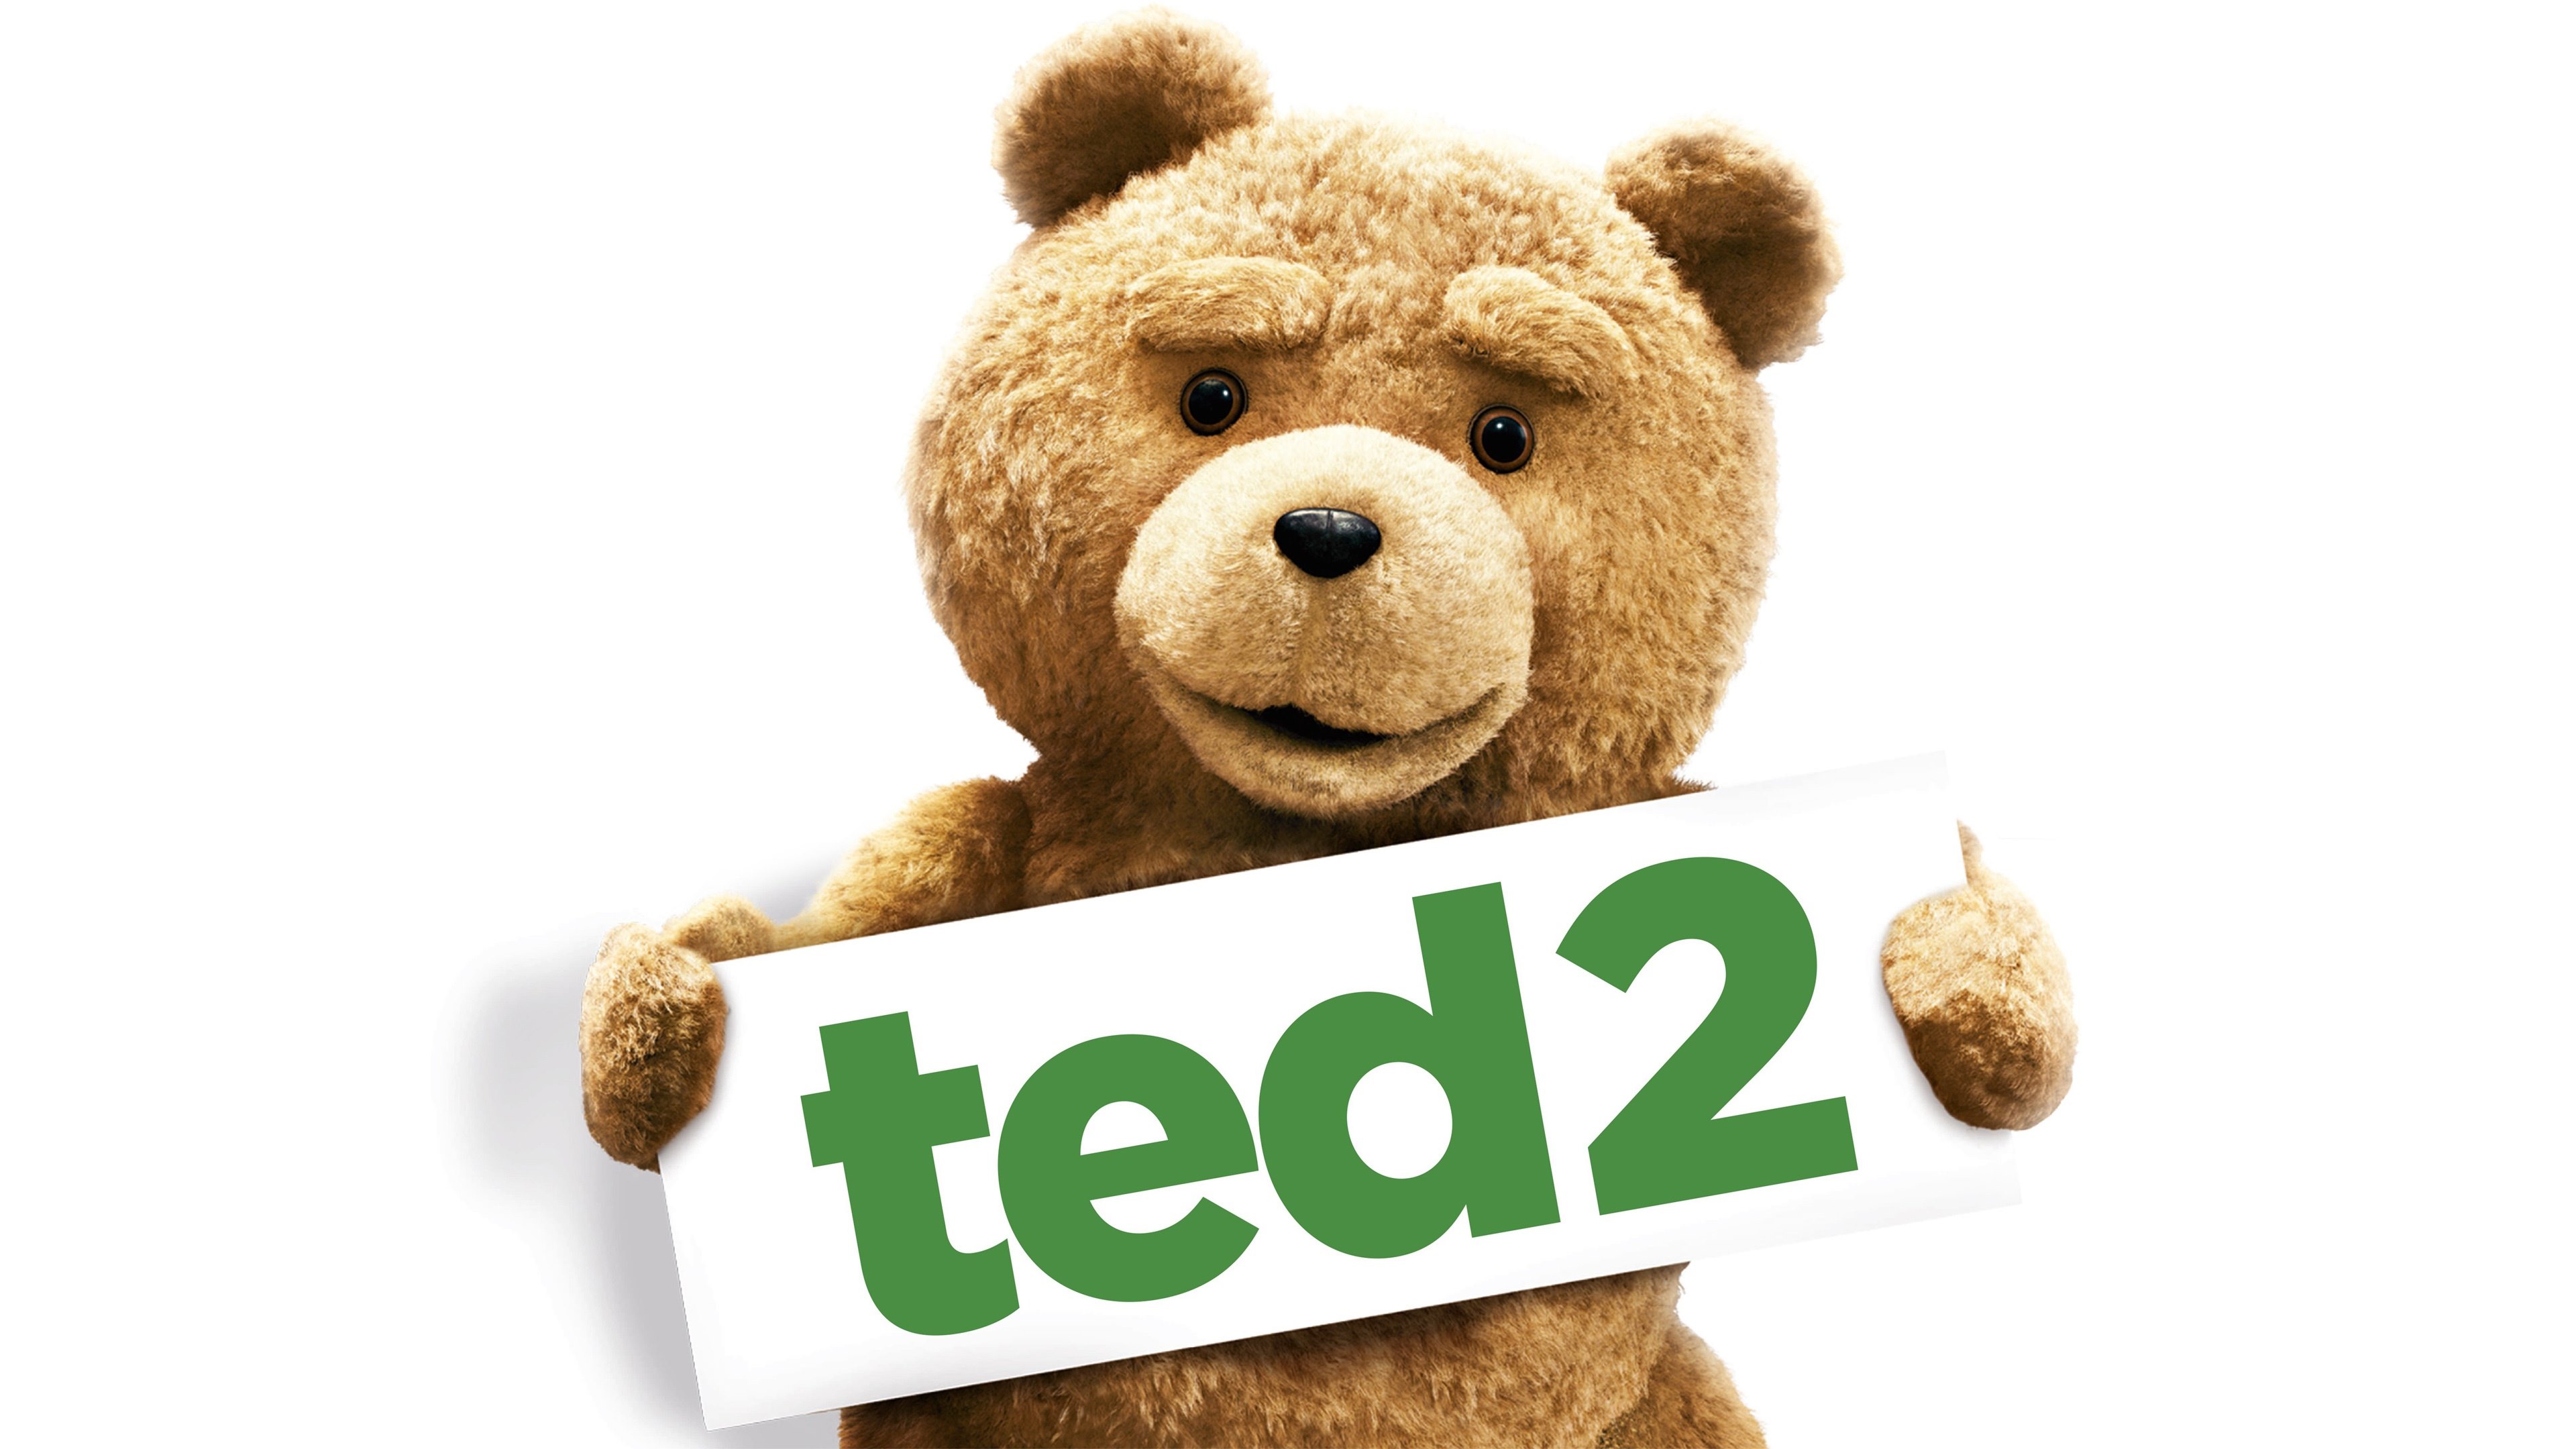 壁紙 3840x2160 テディベア Ted 2 単語 映画 ダウンロード 写真